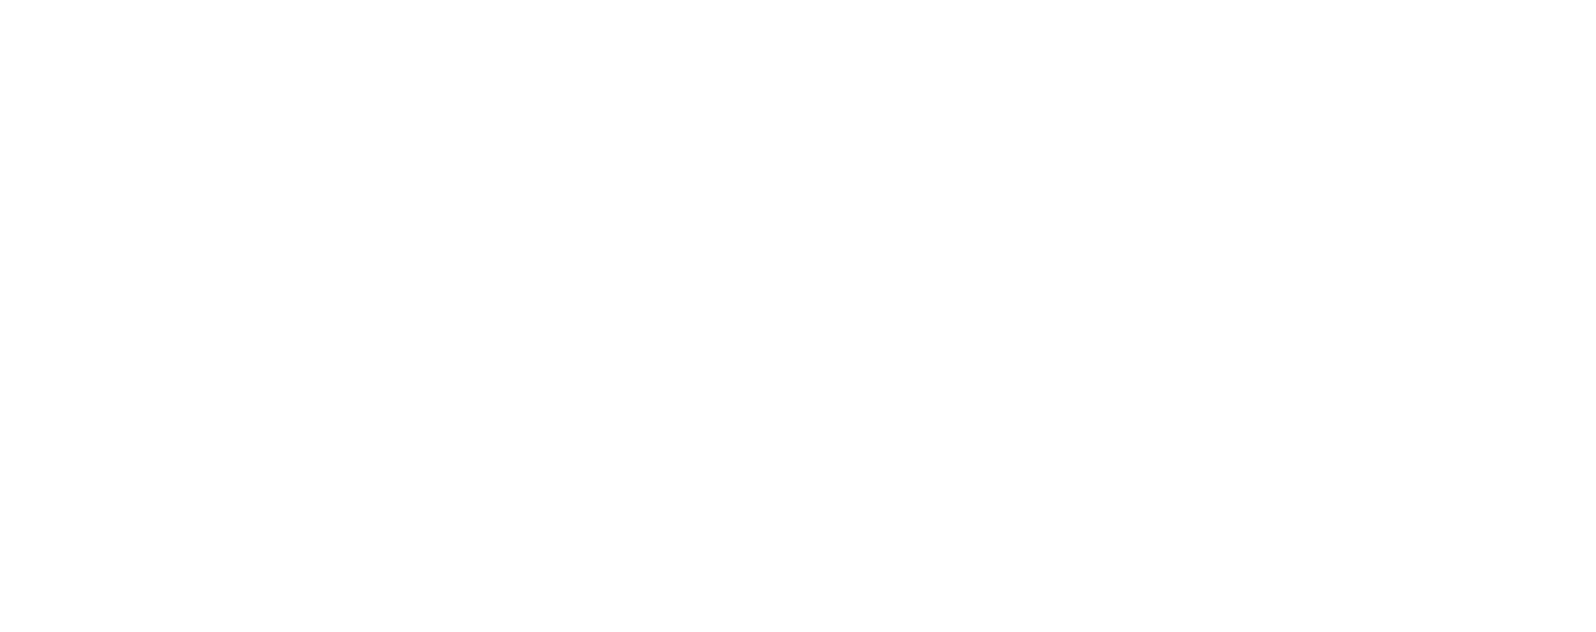 CVRx logo large for dark backgrounds (transparent PNG)